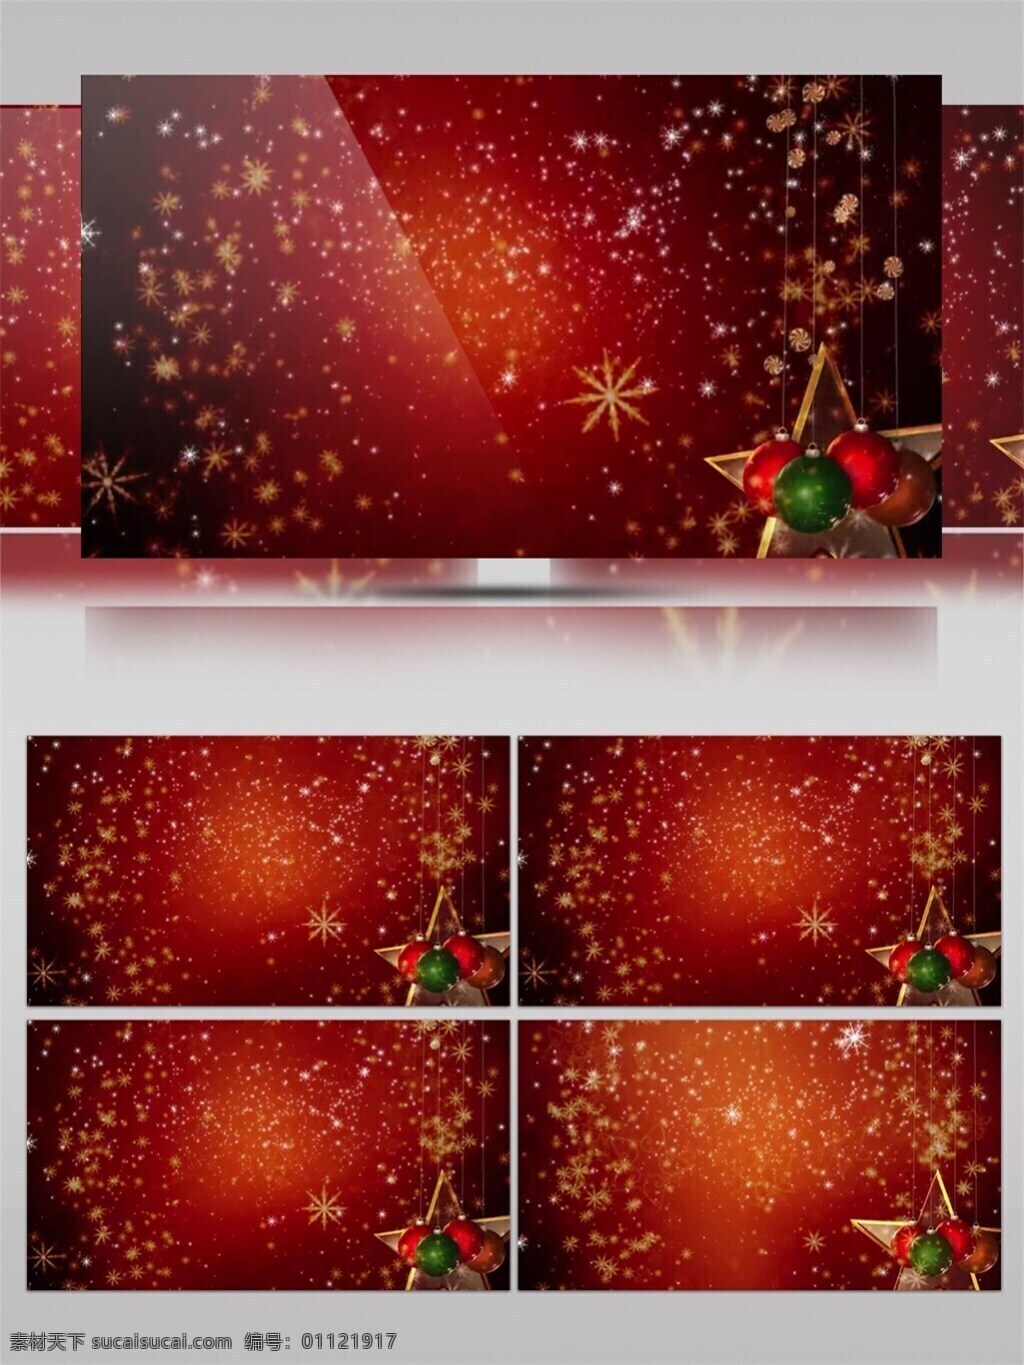 红色 扥 光 装饰 圣诞节 视频 华丽雪花 节日壁纸 节日庆祝 灯光 炫酷红光